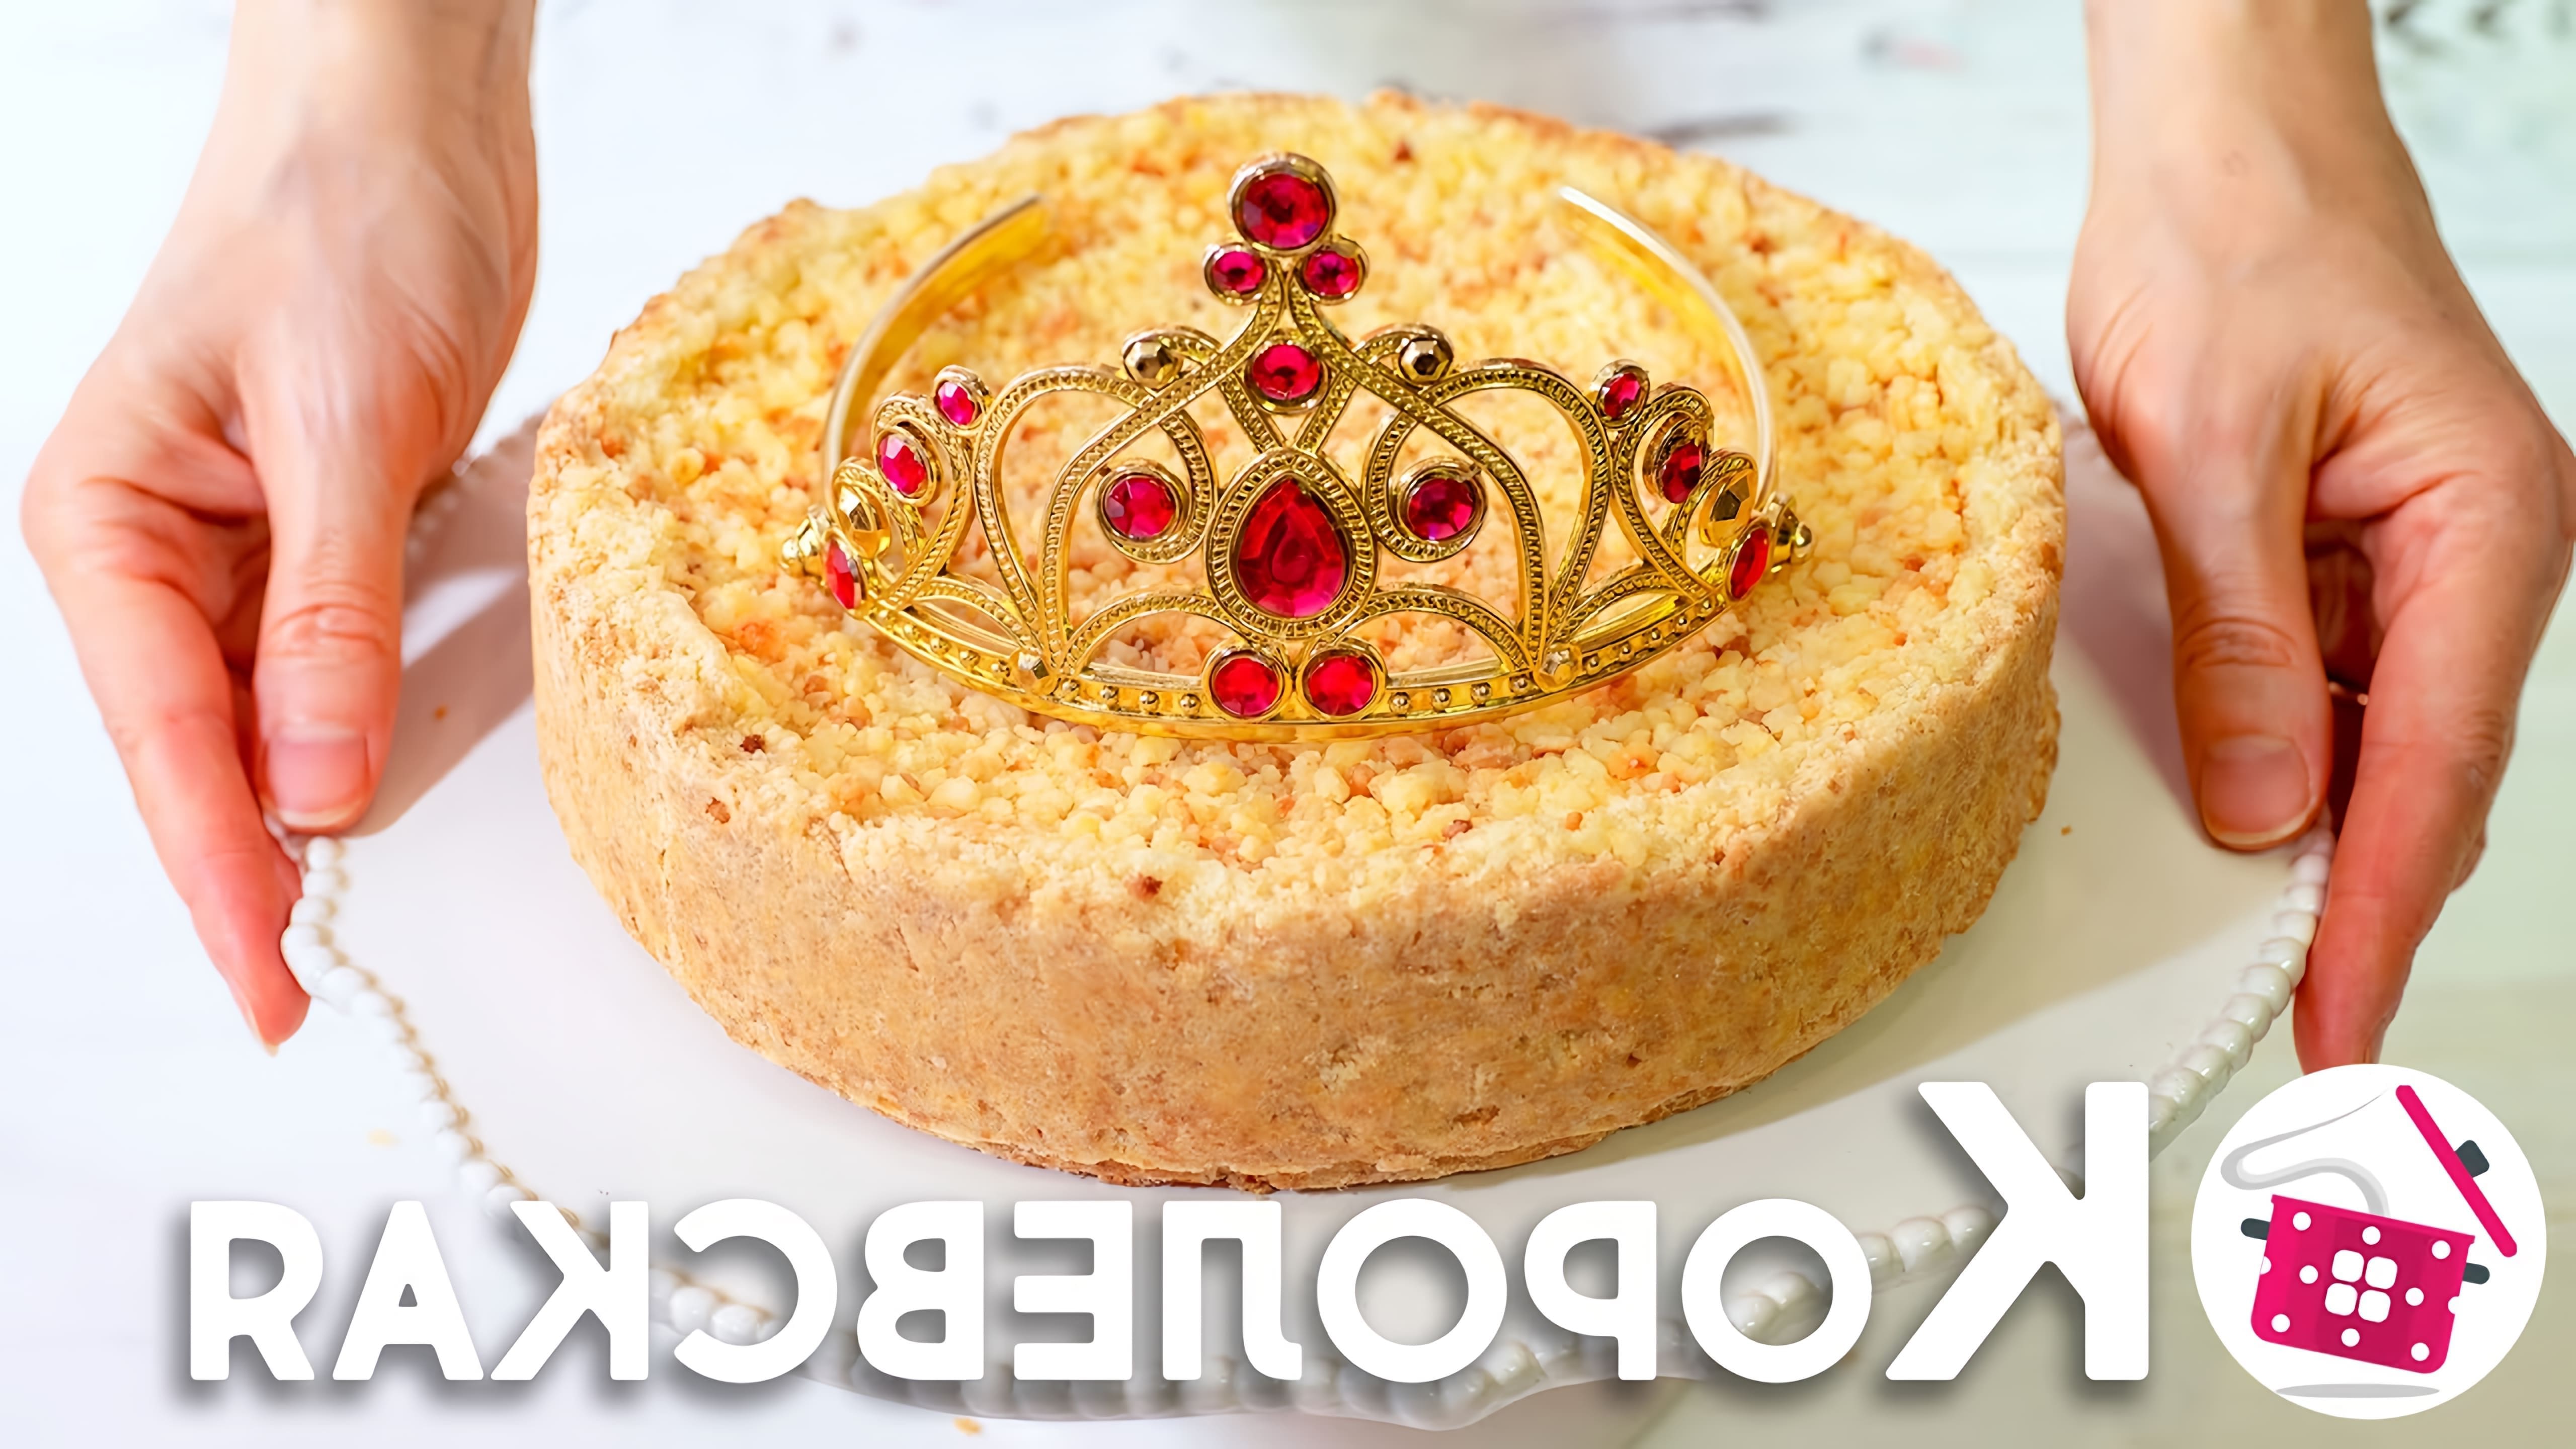 В этом видео демонстрируется процесс приготовления королевской ватрушки - нежного творожного пирога, который напоминает чизкейк